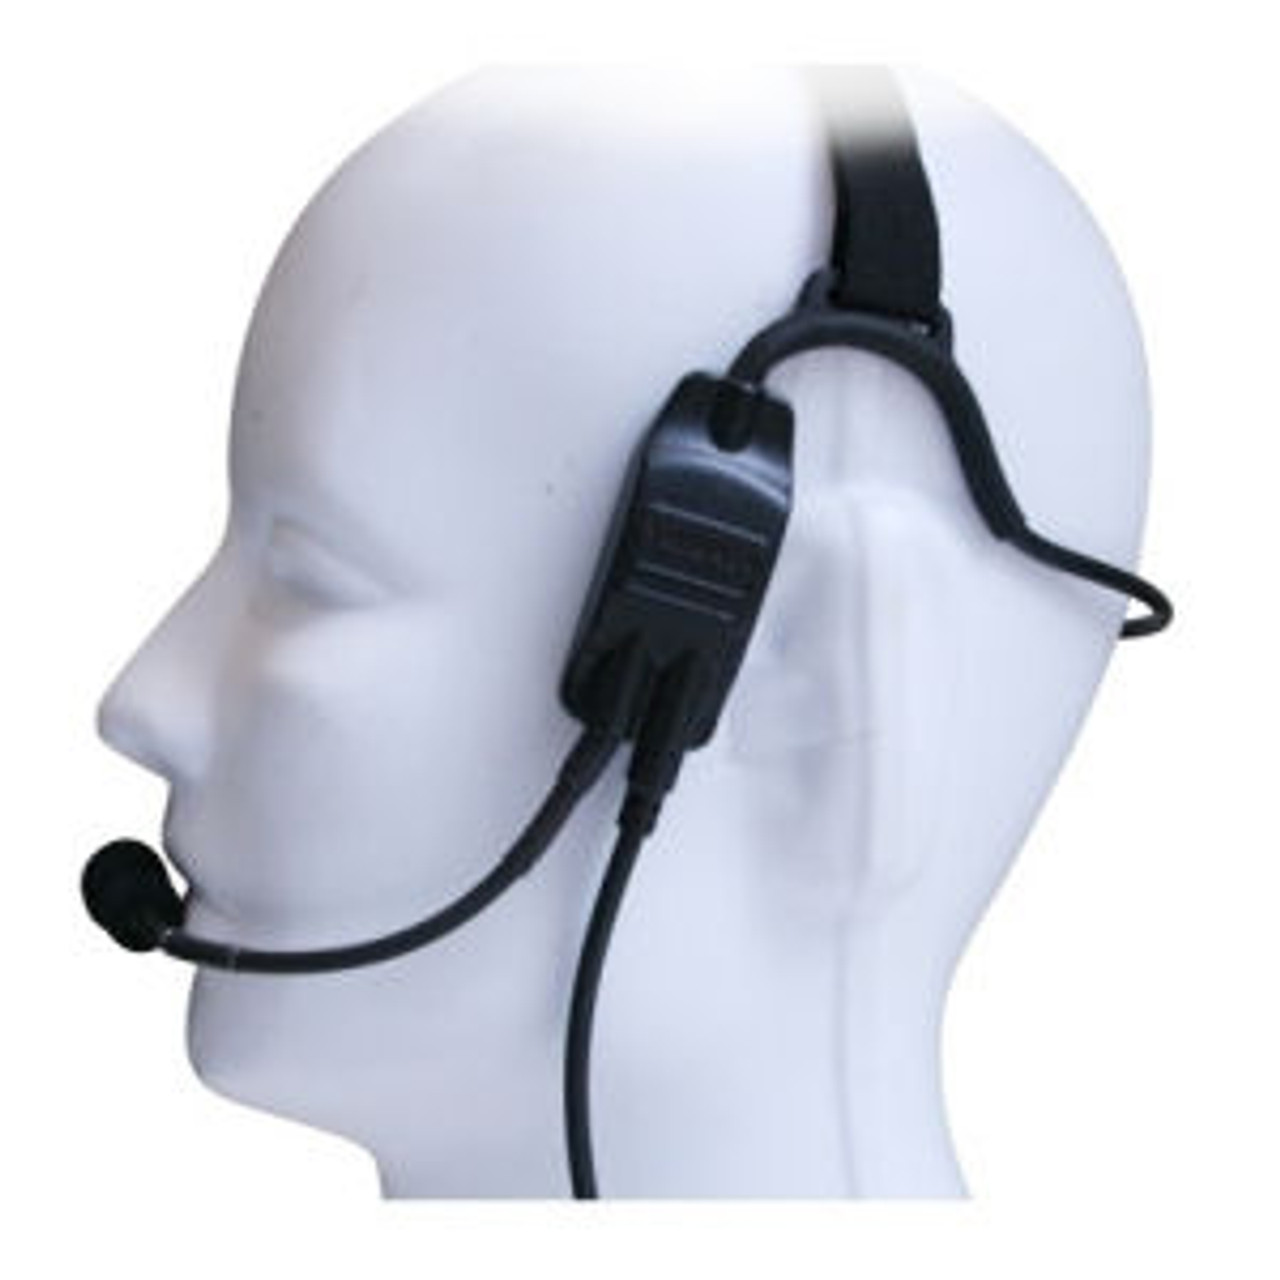 Kenwood NX-420 Temple Transducer Headset